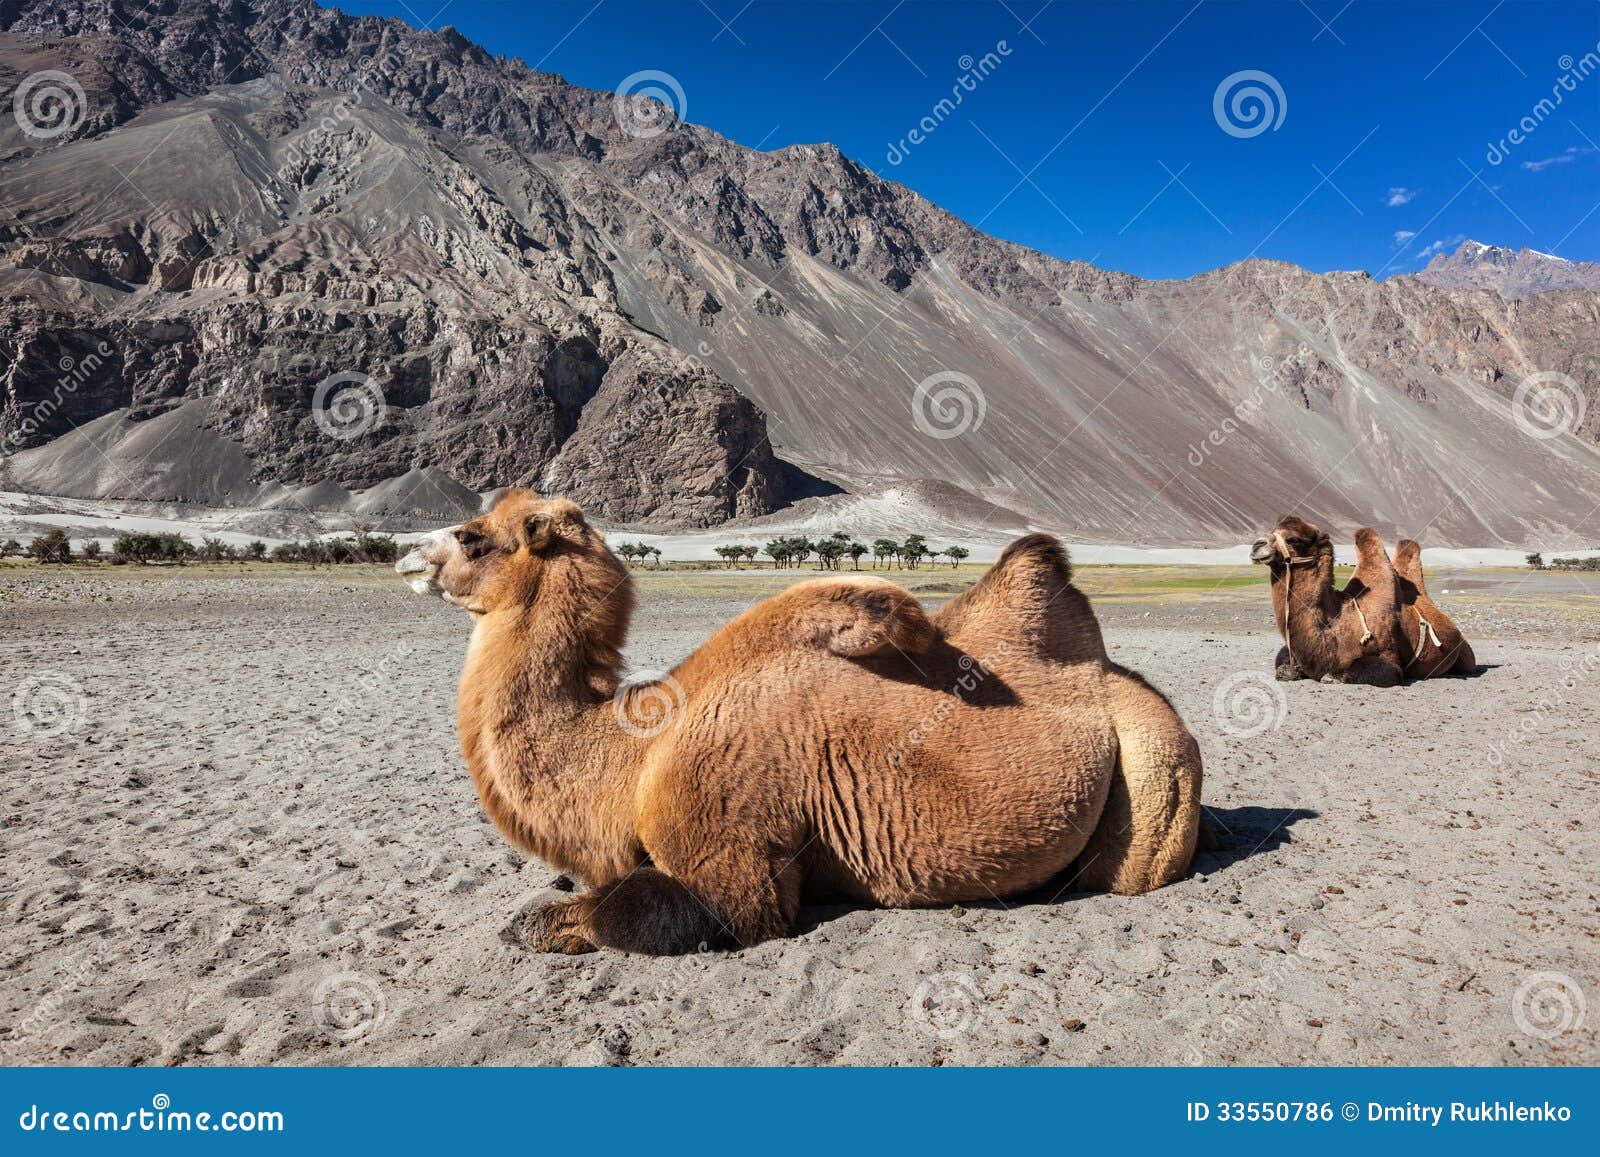 camel in nubra vally, ladakh